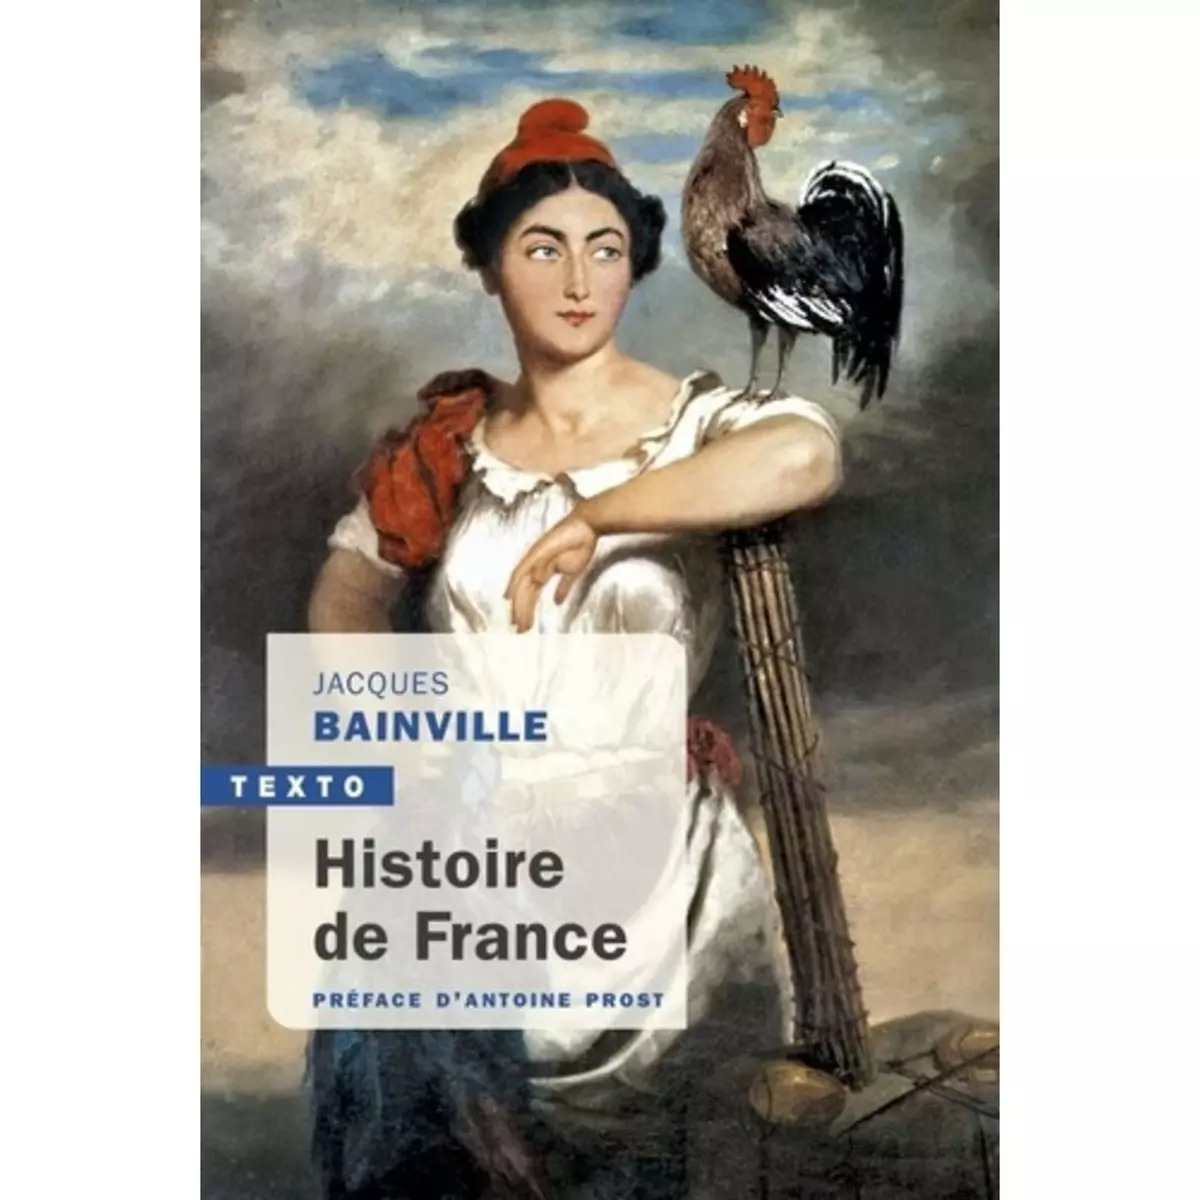  HISTOIRE DE FRANCE, Bainville Jacques